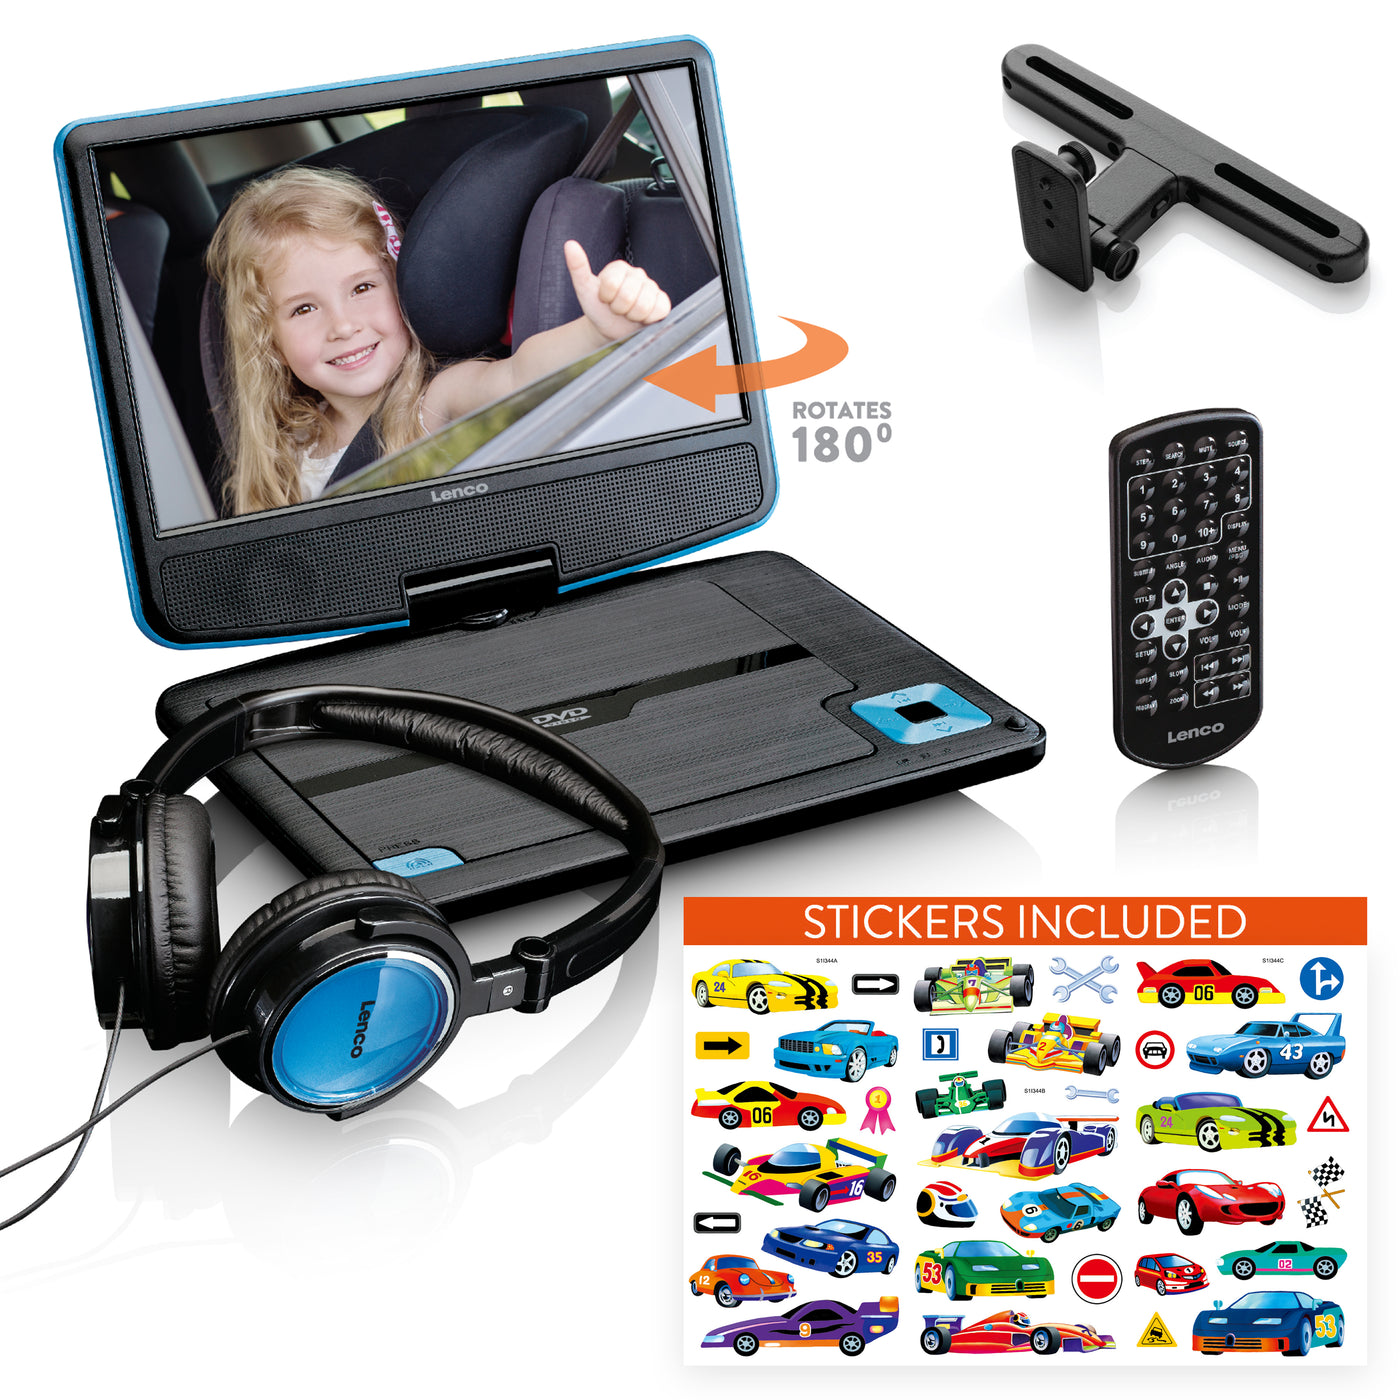 Lenco DVP-920BU - Lecteur DVD portable de 9 pouces avec casque, port USB et dispositif de suspension - Bleu/Noir